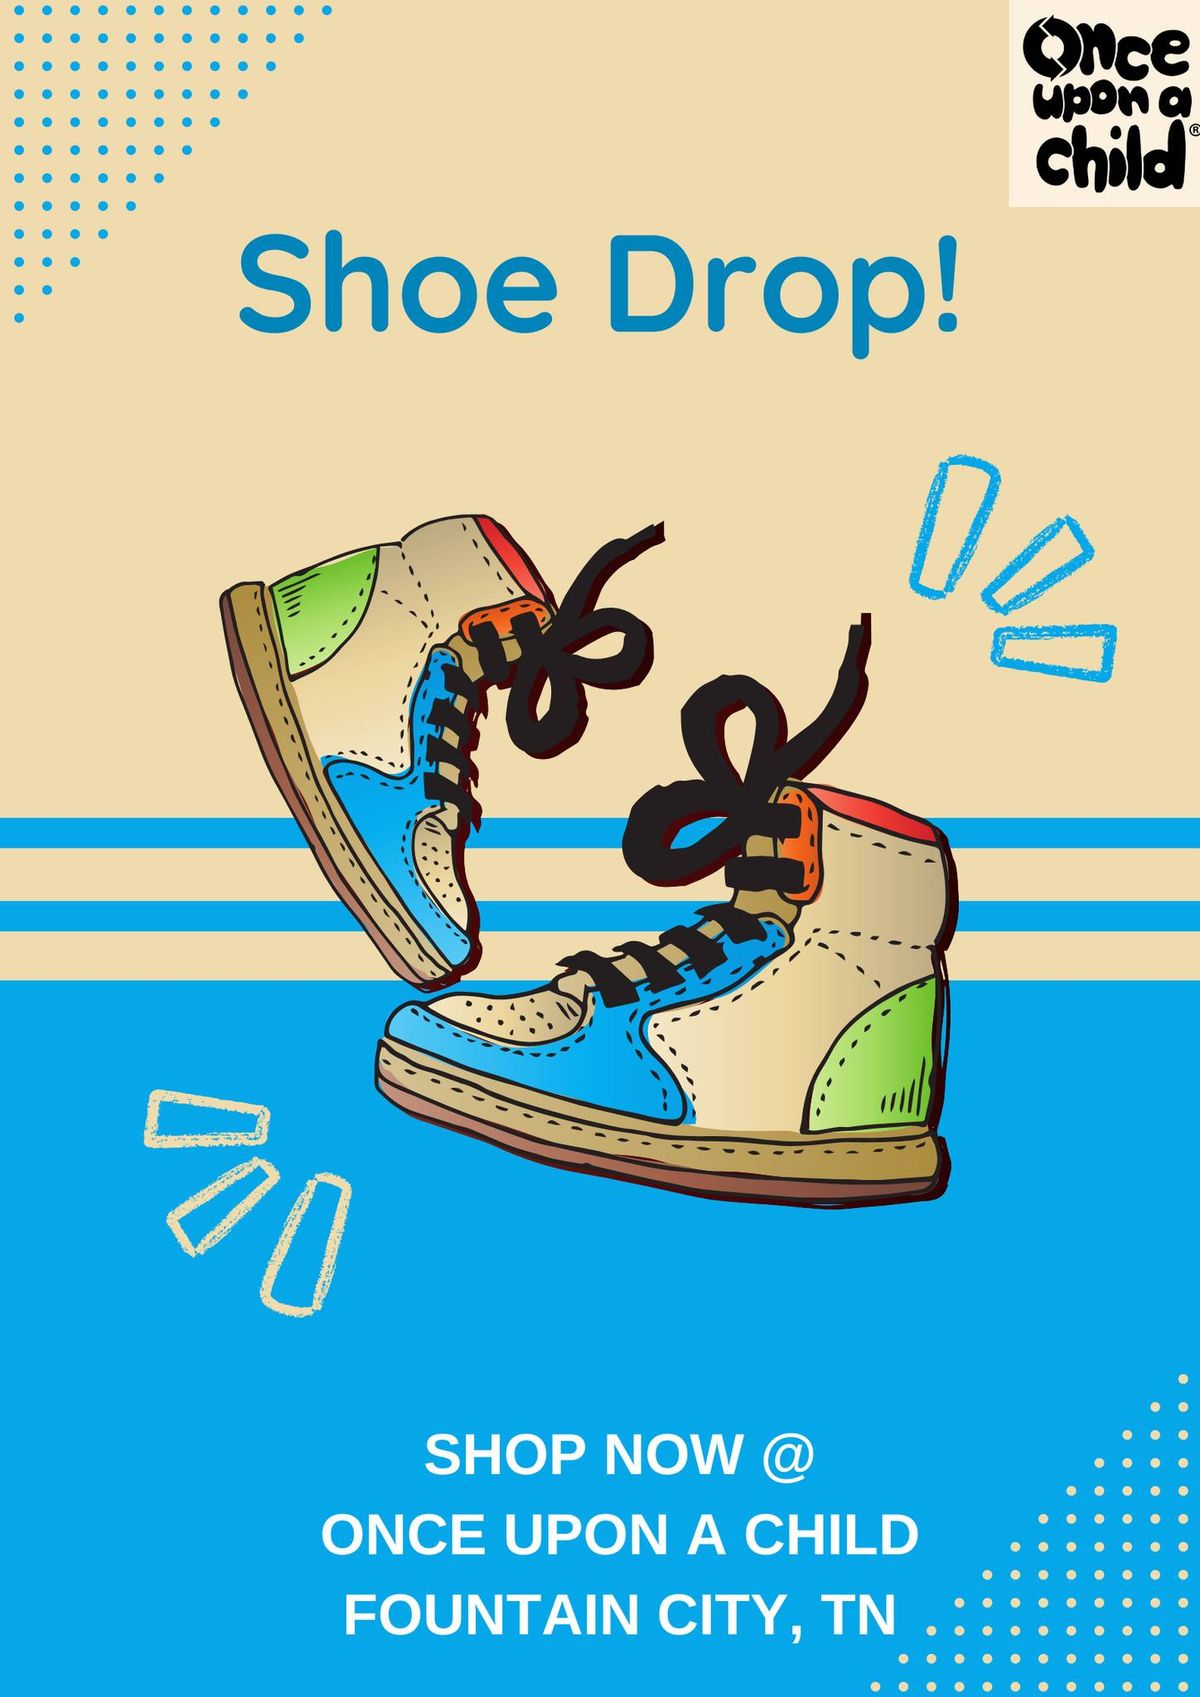 Shoe Drop Event!!